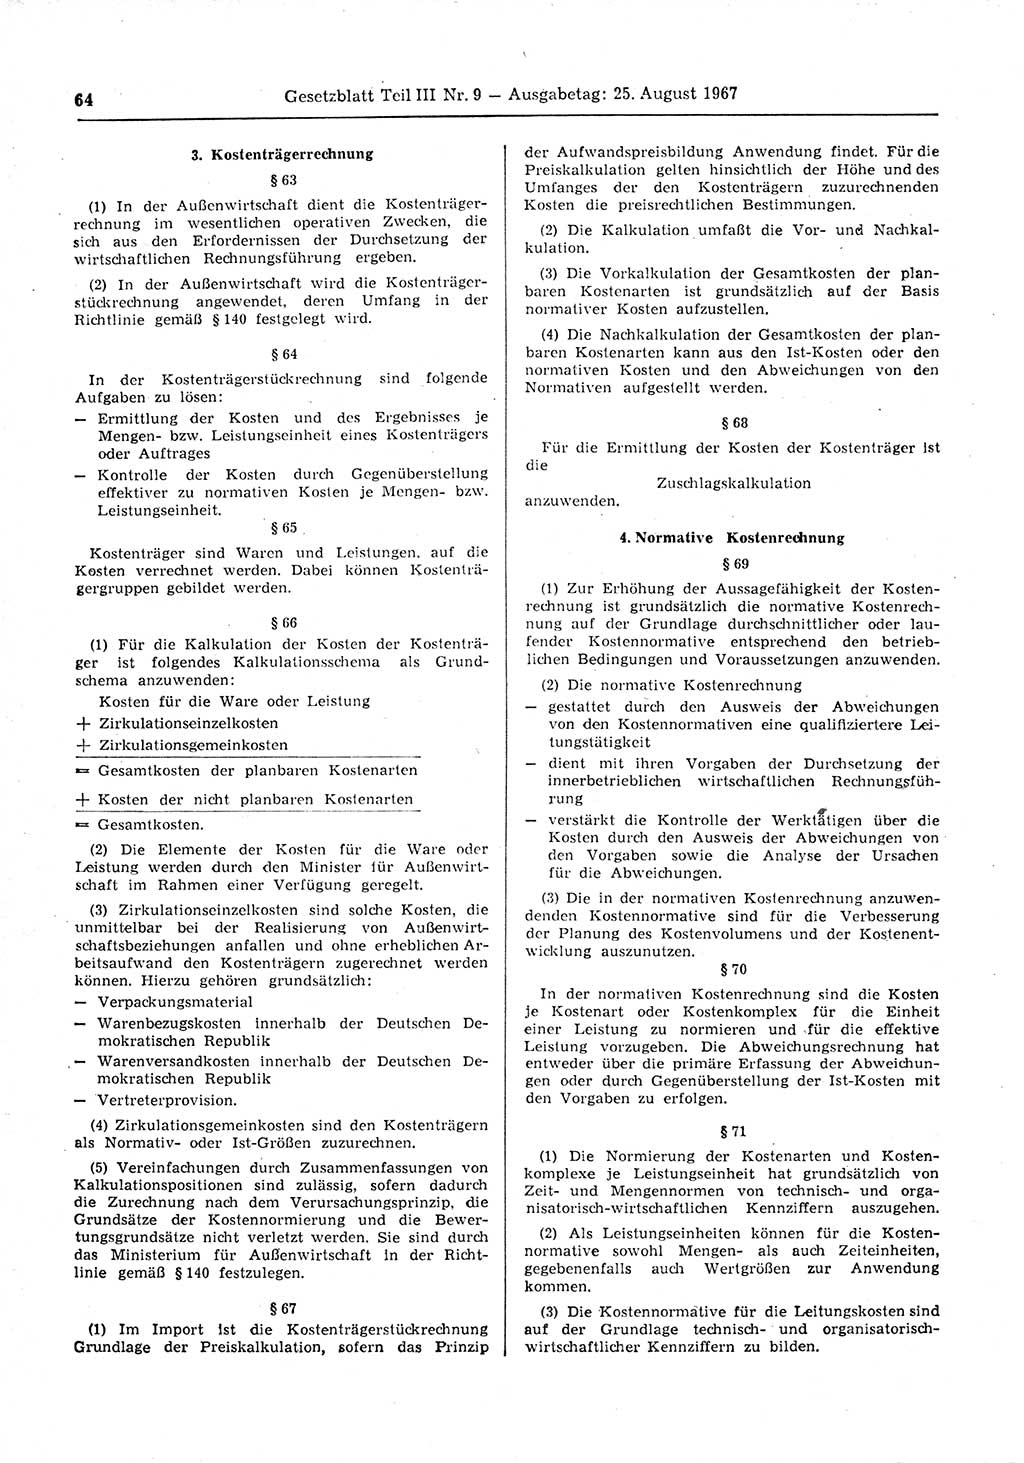 Gesetzblatt (GBl.) der Deutschen Demokratischen Republik (DDR) Teil ⅠⅠⅠ 1967, Seite 64 (GBl. DDR ⅠⅠⅠ 1967, S. 64)